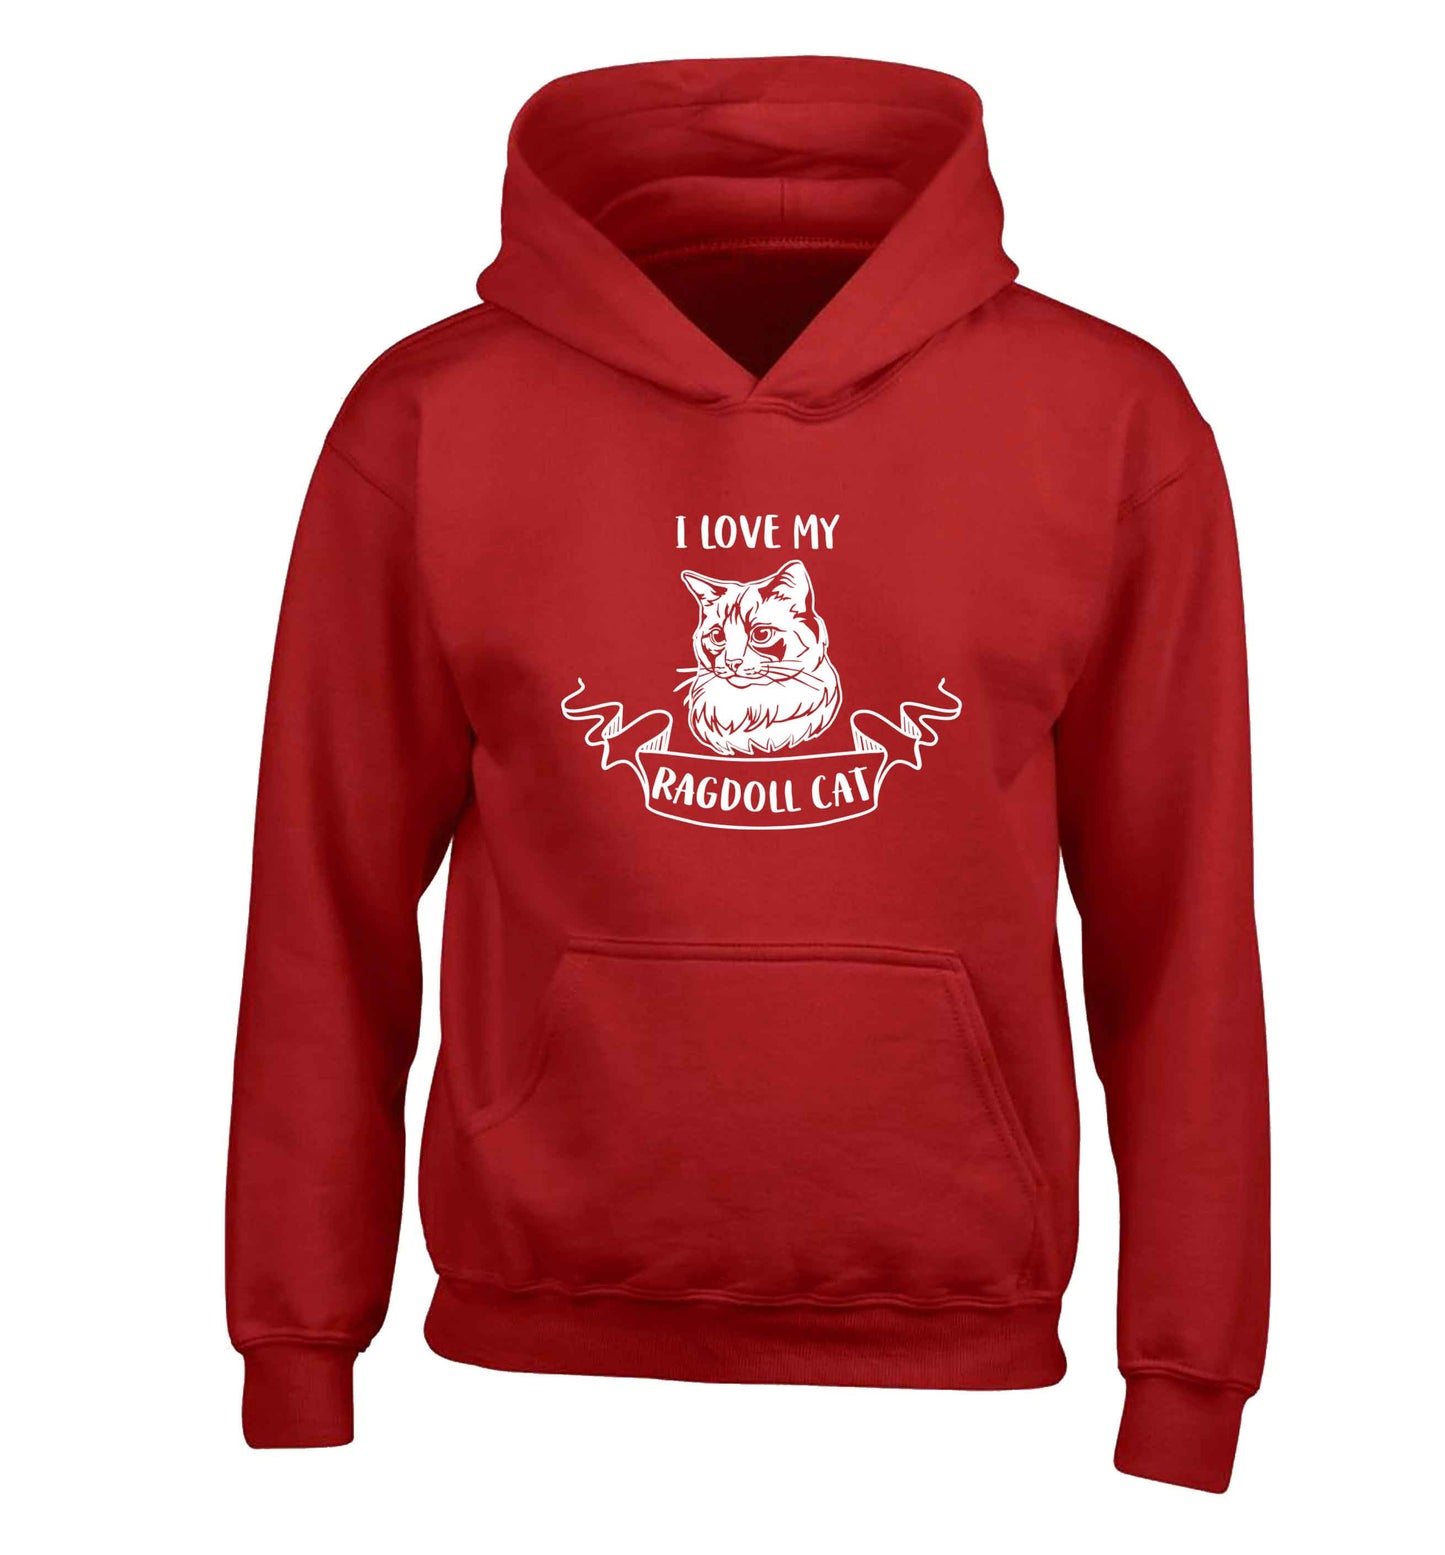 I love my ragdoll cat children's red hoodie 12-13 Years